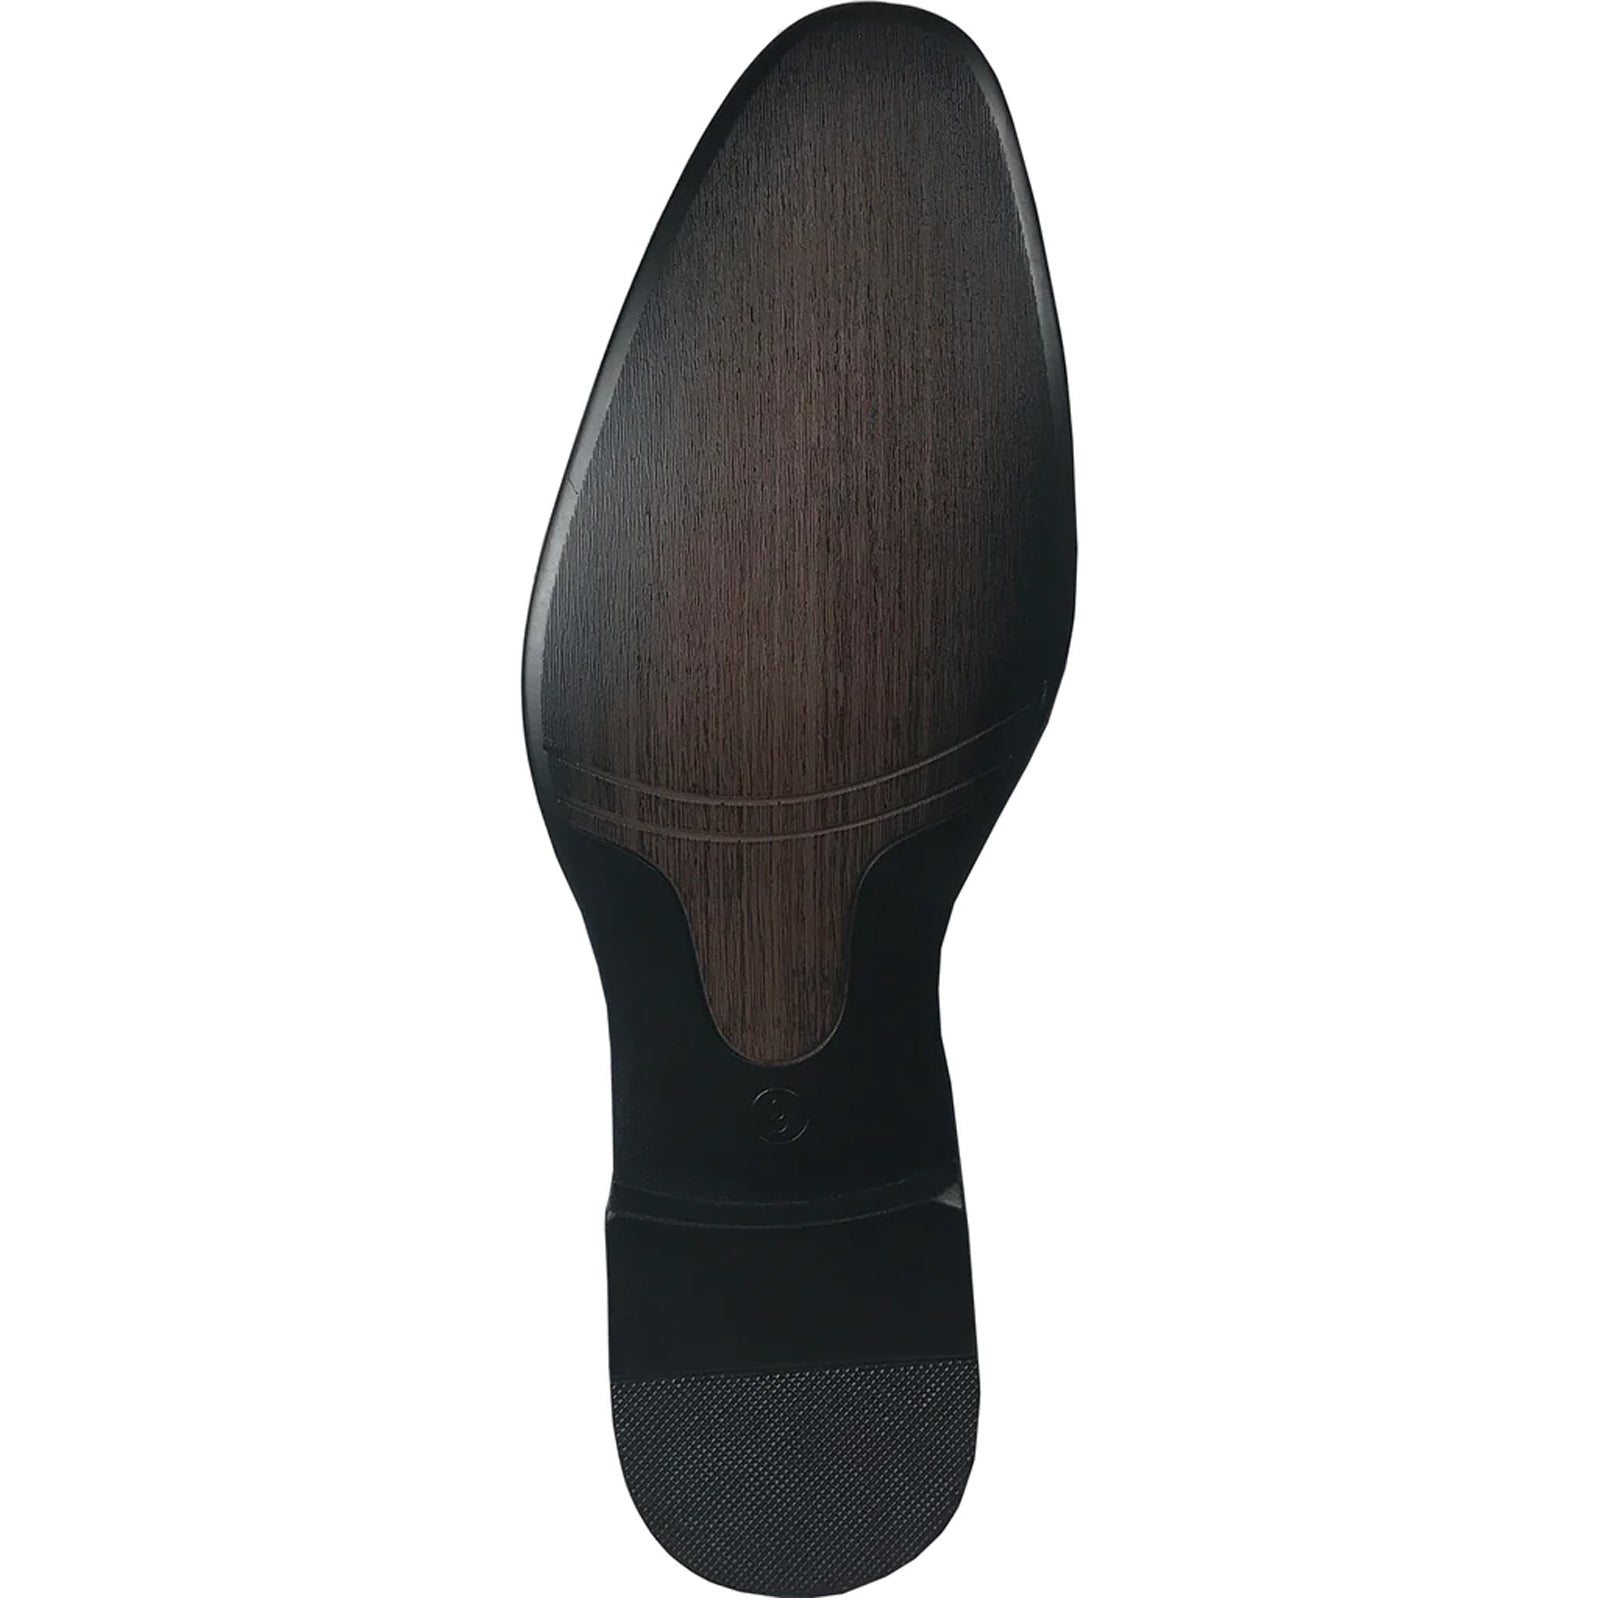 "Burgundy Velvet Tuxedo Loafers - Modern Men's Slip-On Style"